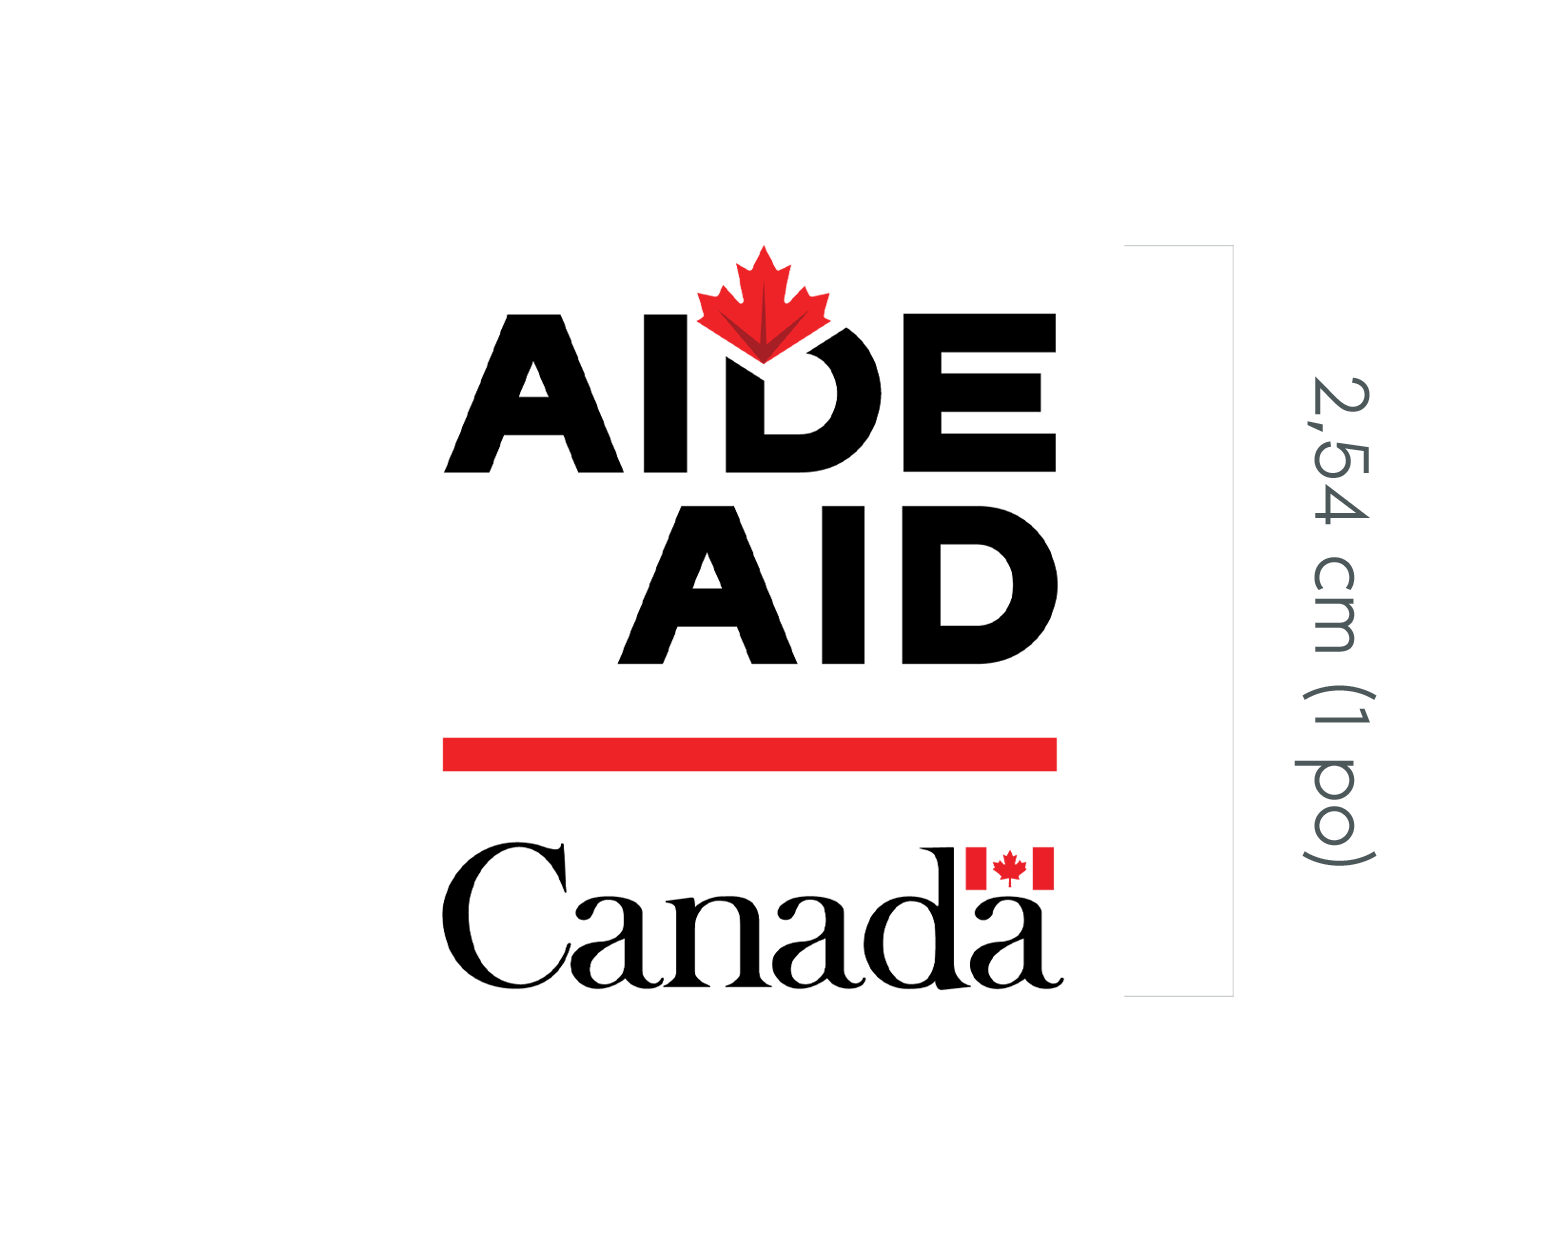 Les éléments graphiques de la signature Canada Aide sont présentés à la gauche du graphique : le mot « Aide » en majuscules avec une feuille d’érable apposée au haut du « D », l’équivalent anglais « Aid » en dessous, également en majuscules, une ligne horizontale rouge et le motsymbole « Canada ». À la droite du graphique, un crochet vertical, à droite duquel est inscrit « 1” », est aligné sur la hauteur totale de la signature.